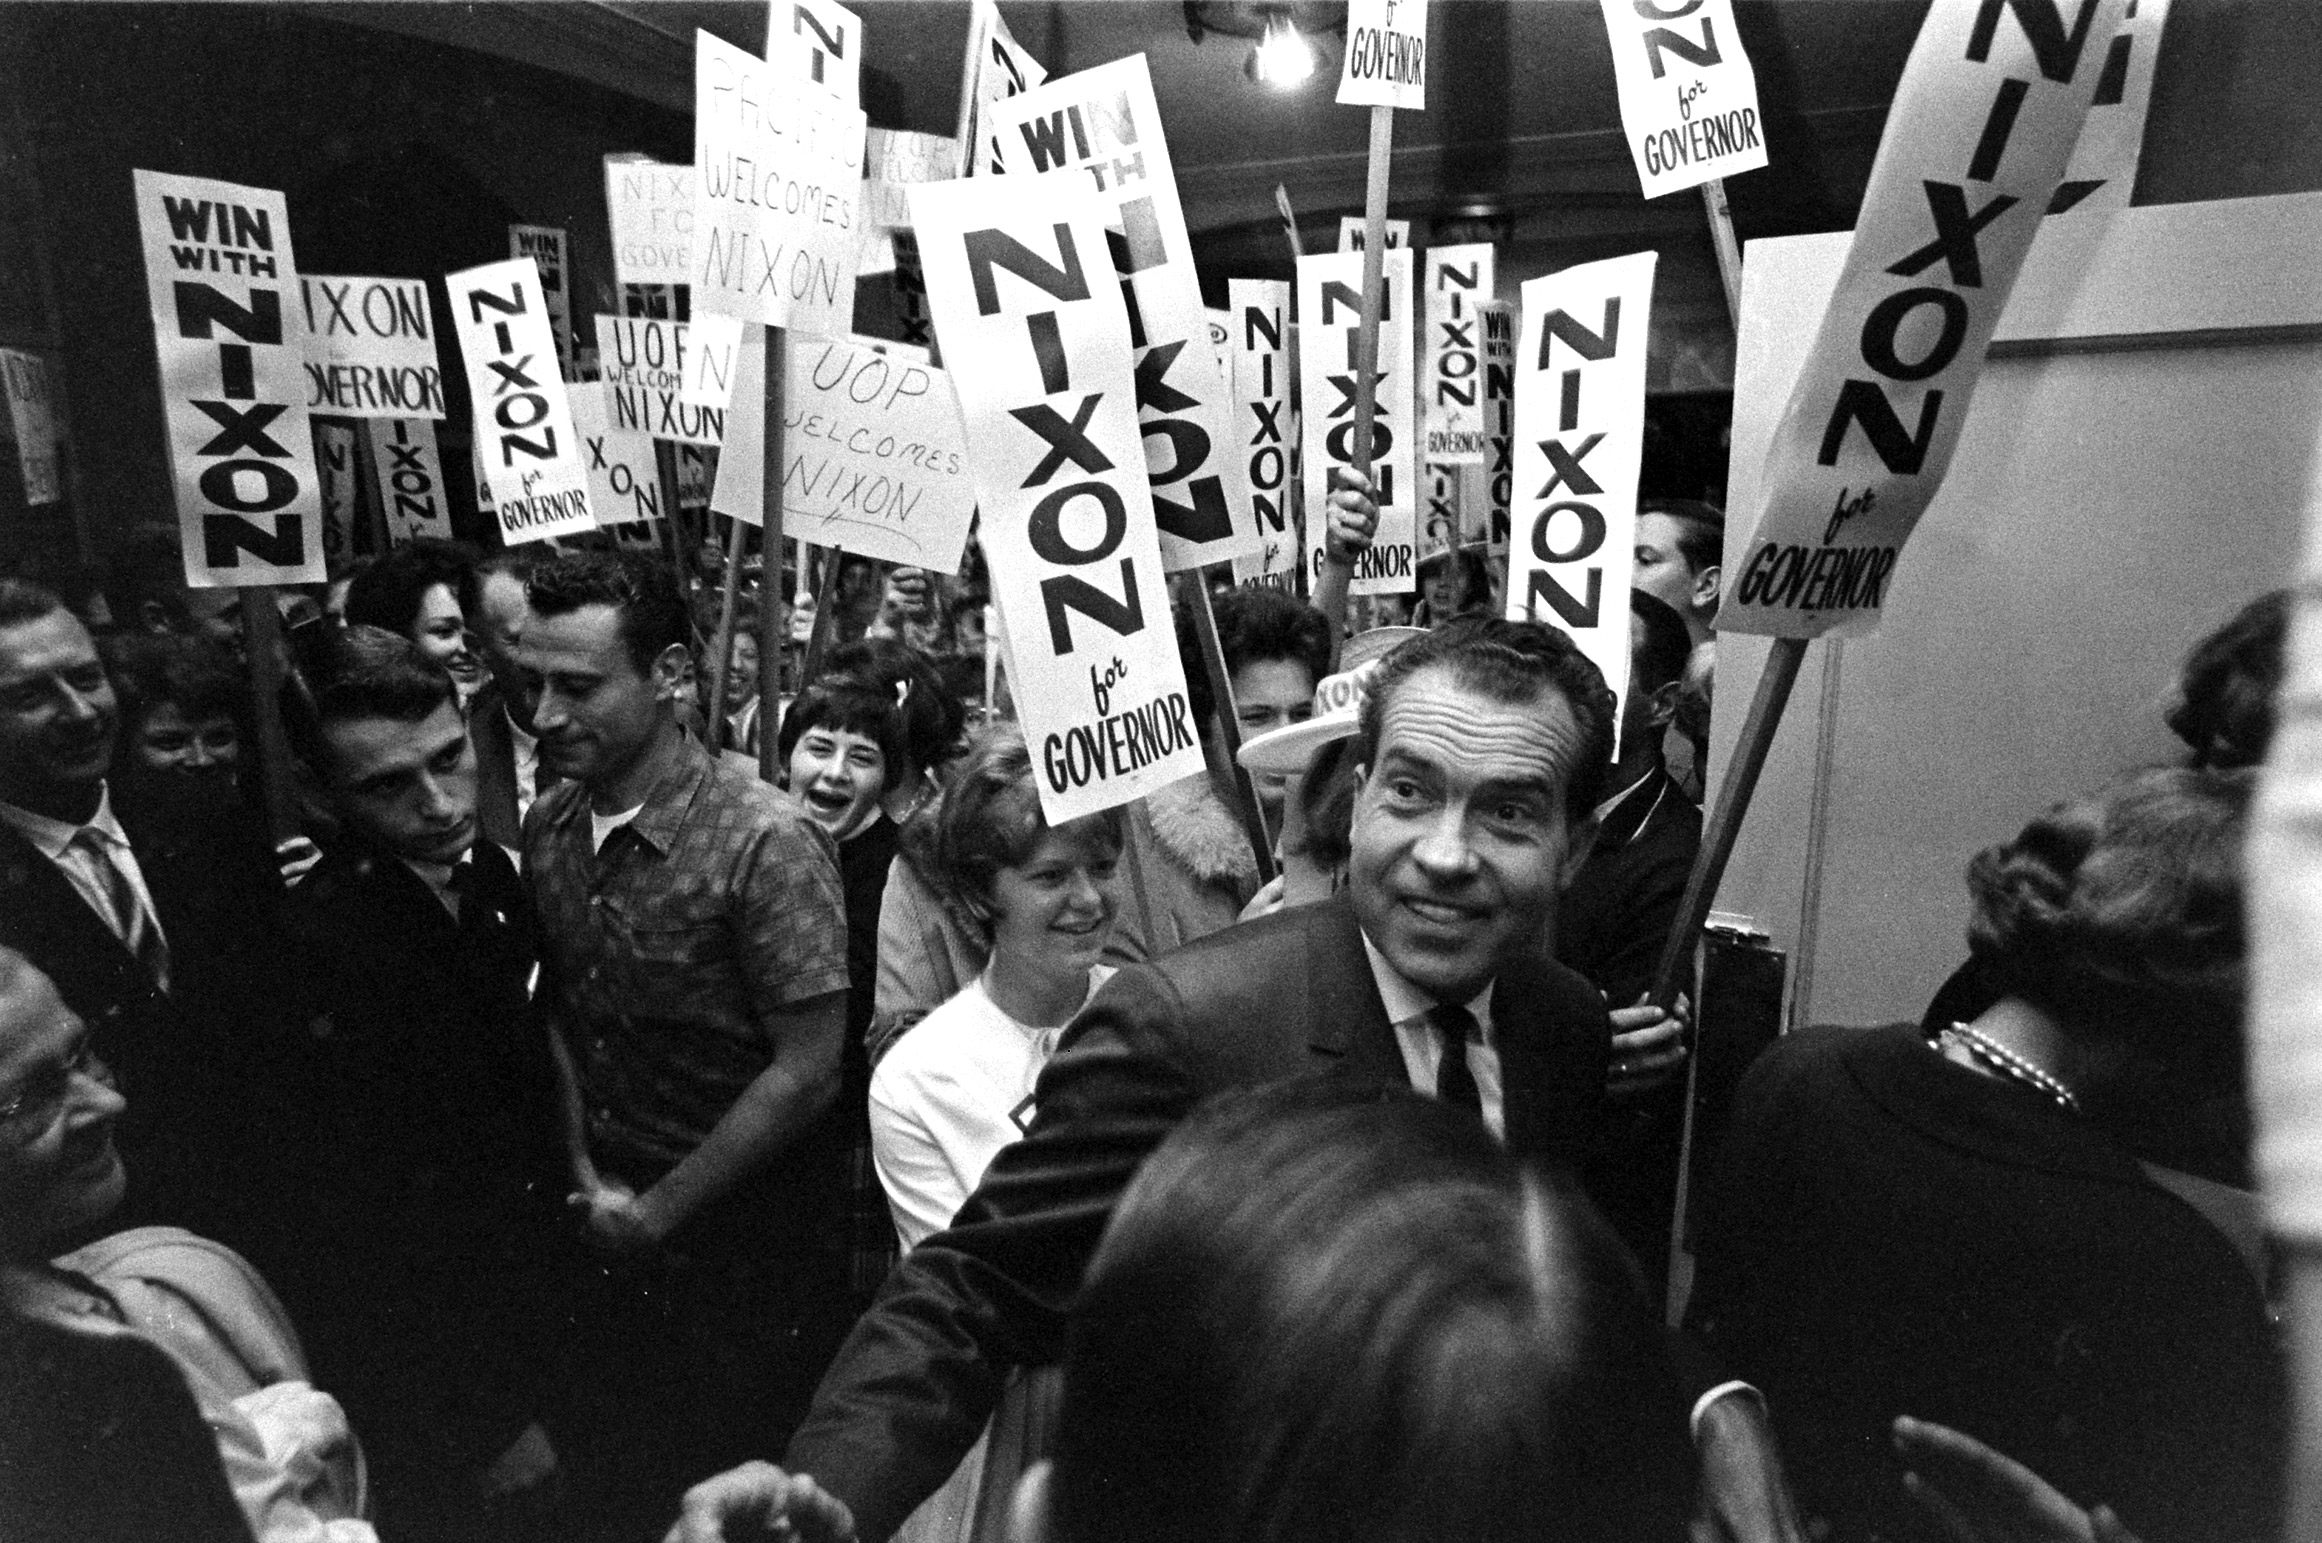 Richard Nixon 1962 Campaign